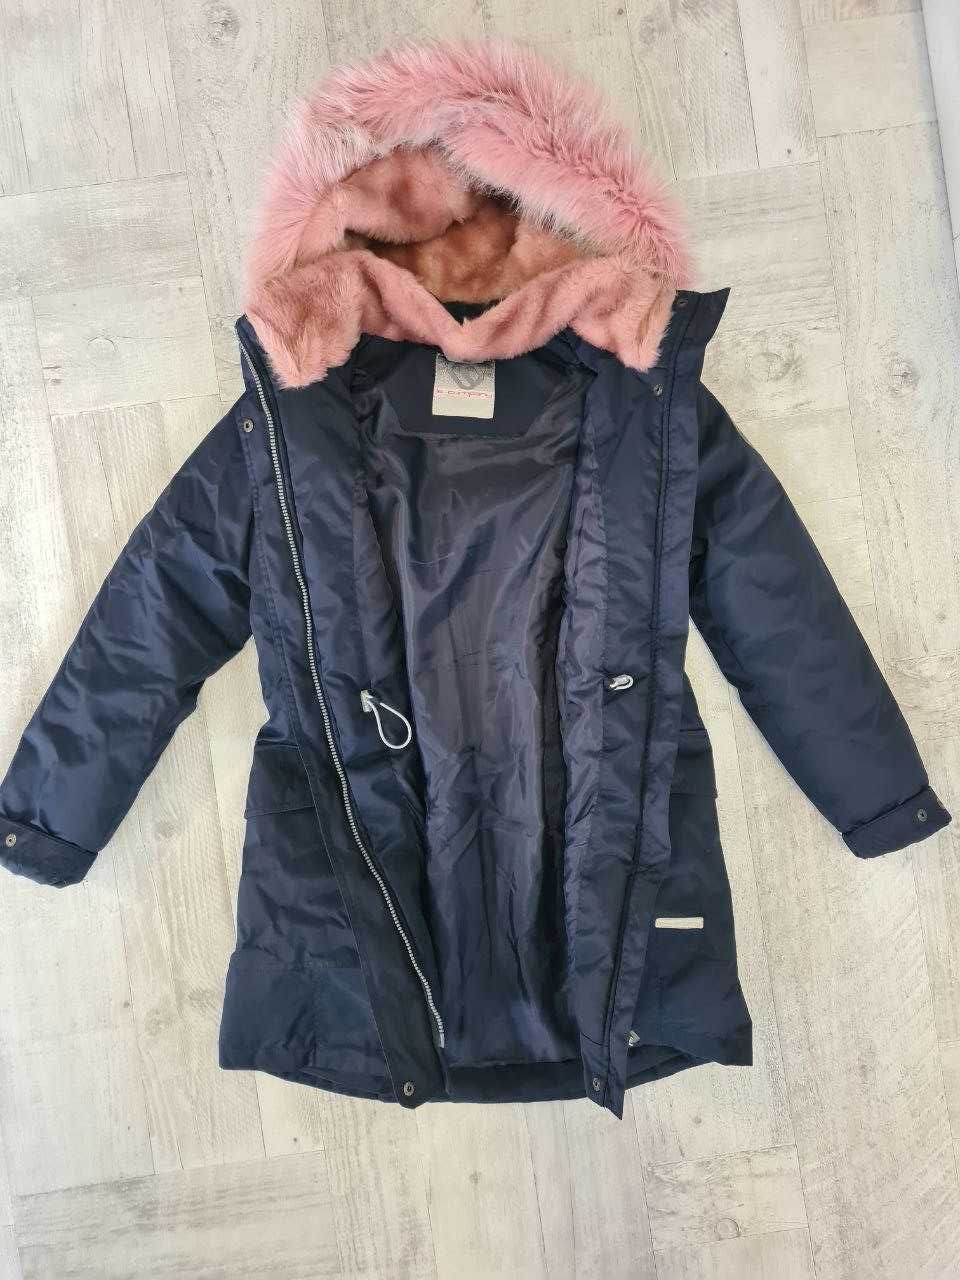 Парка Куртка для дівчинки LENNE зимова ELLY 158р, стан нової куртки